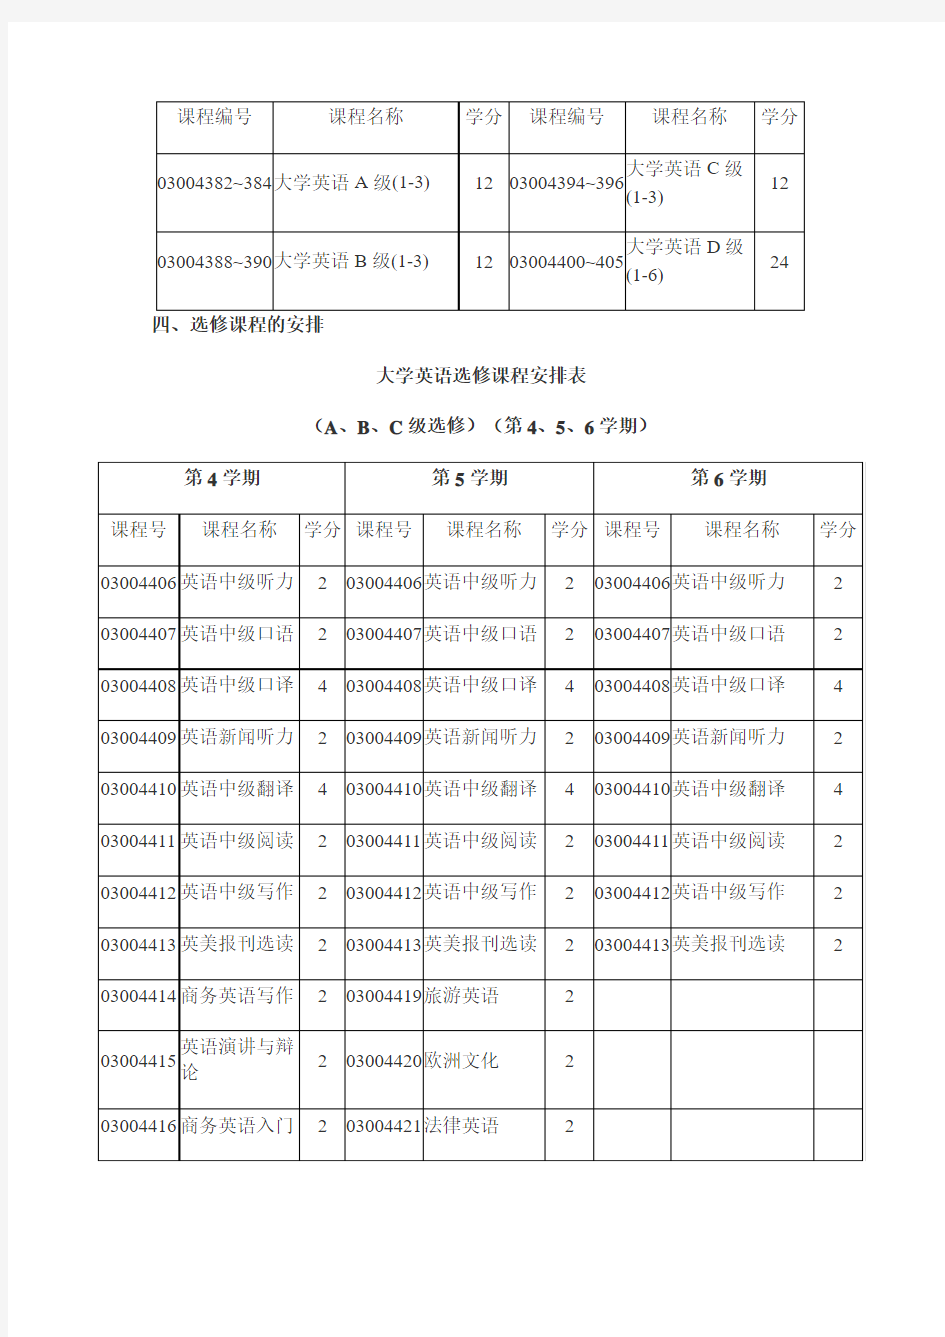 上海大学英语课程分级教学方案简介